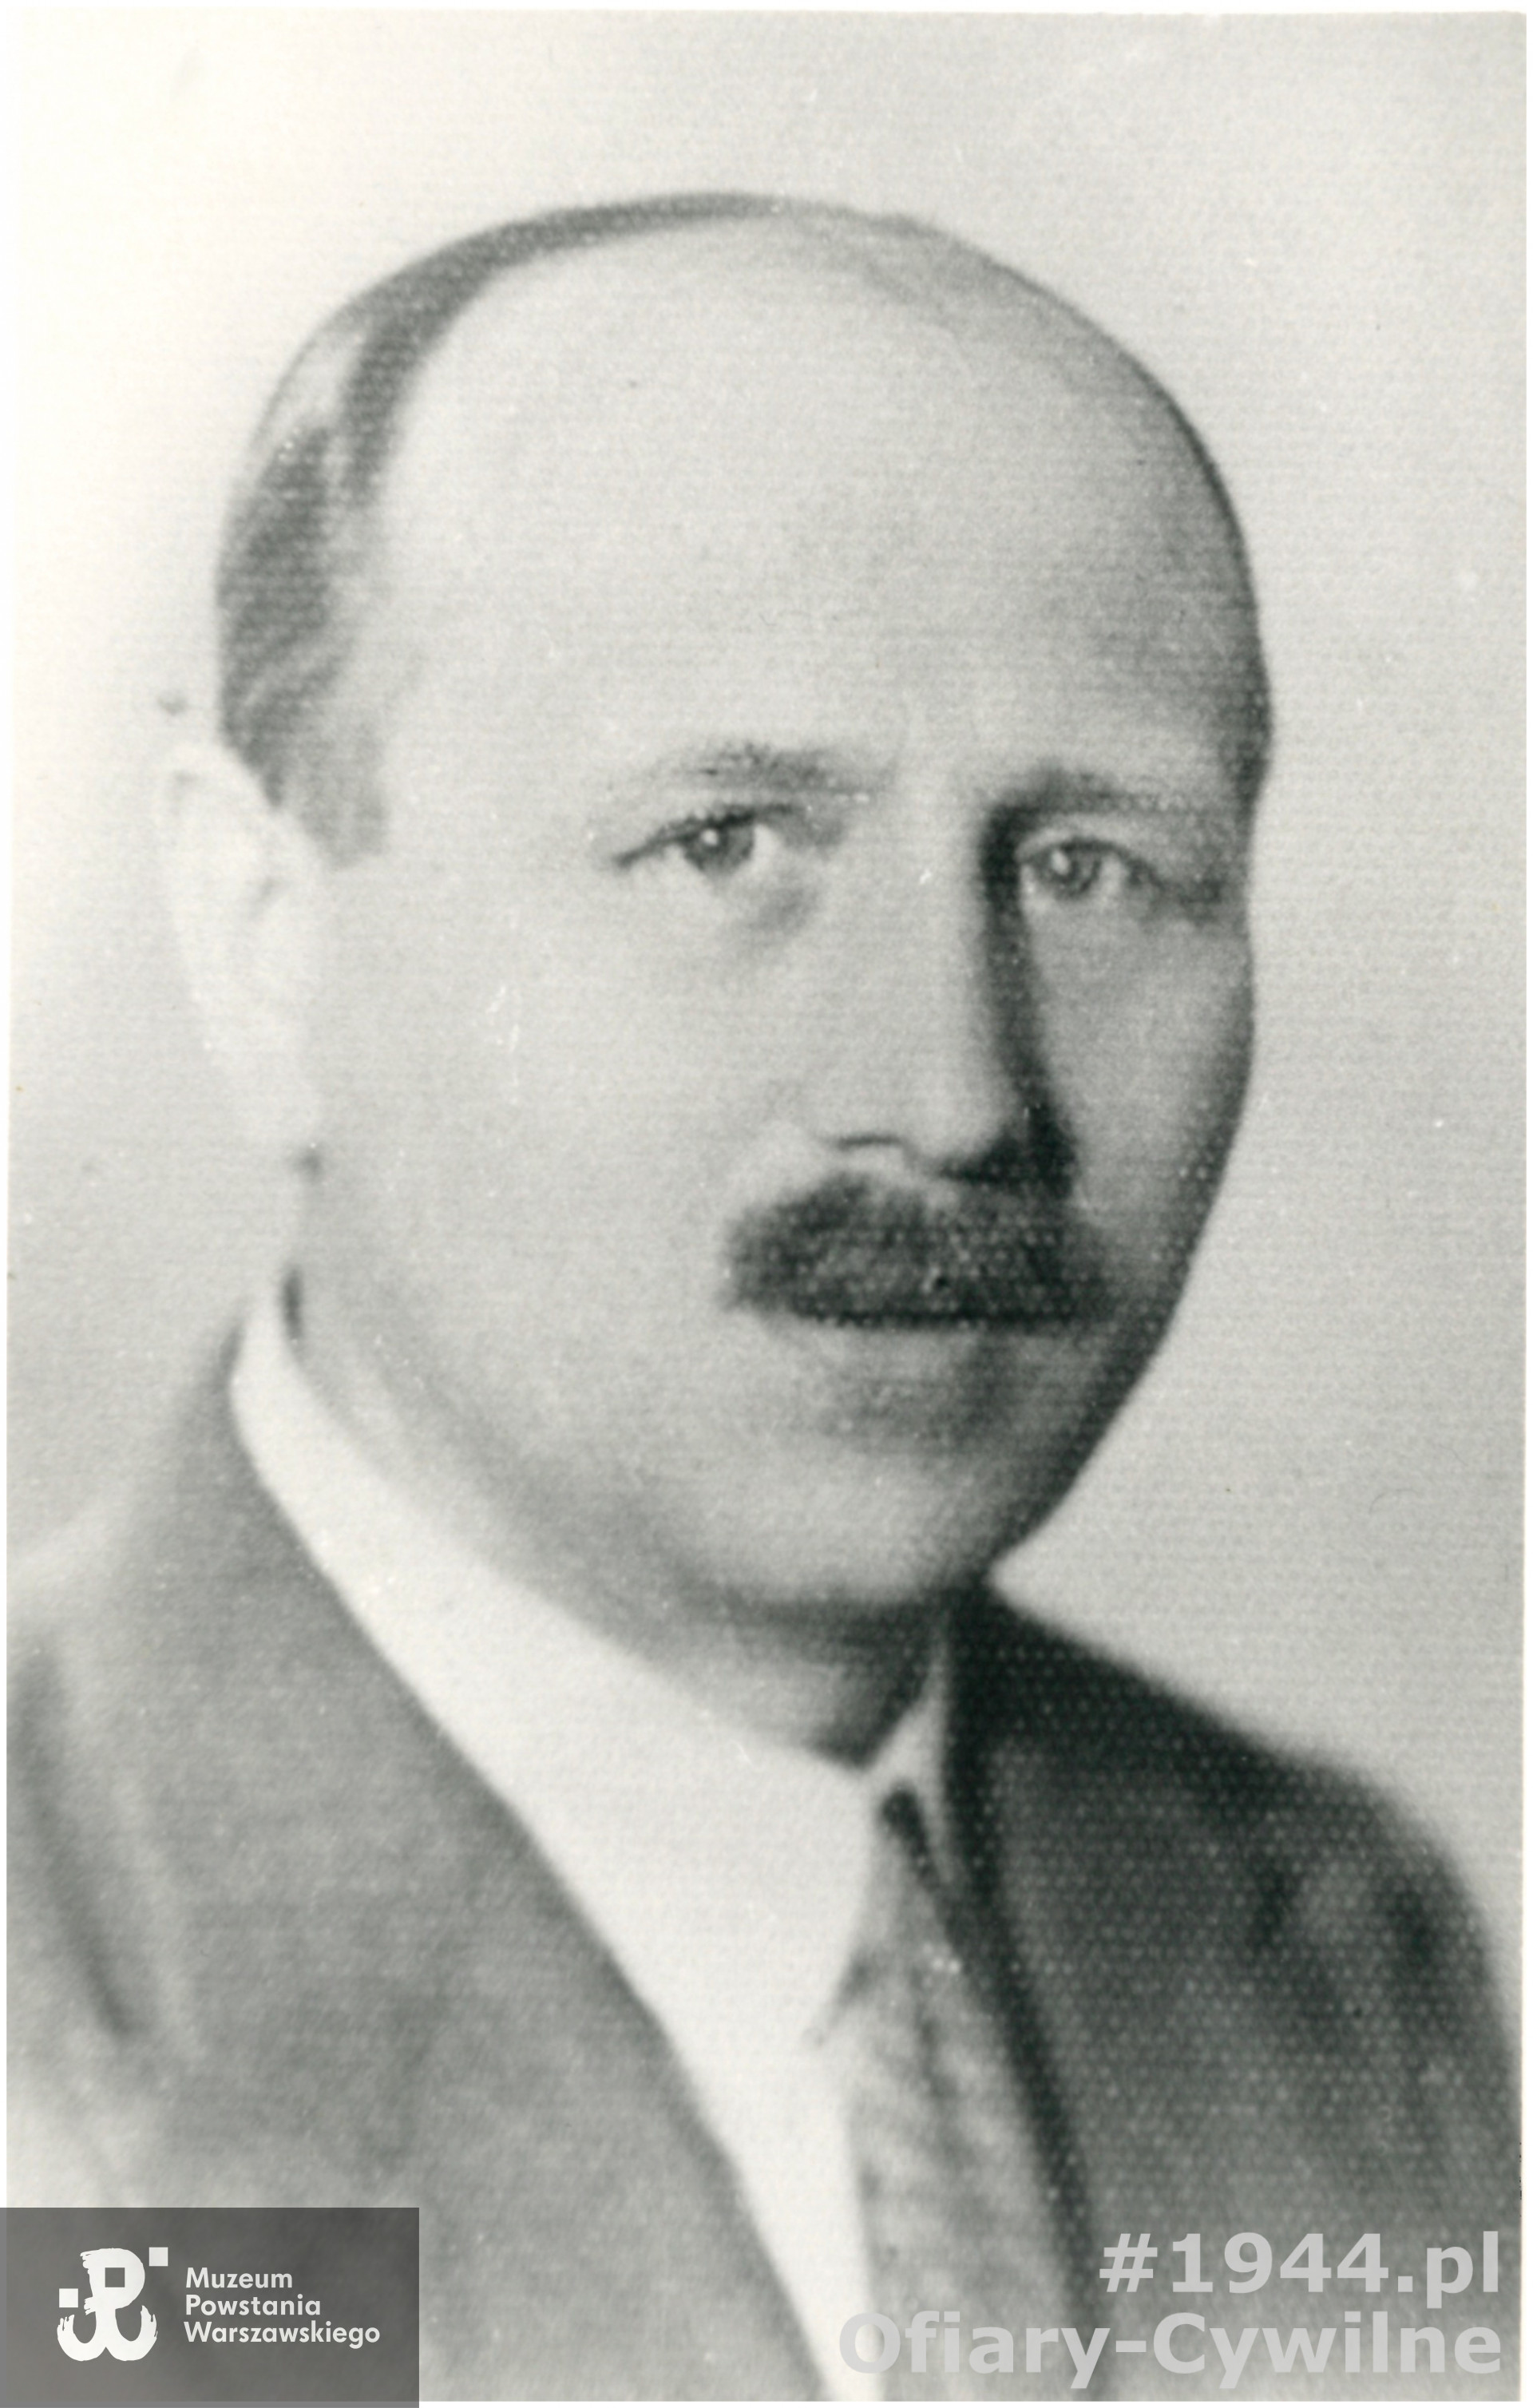 Antoni Czarnowski (1890-1944, zdjęcie udostępnione przez córkę p. Krystynę Tylman